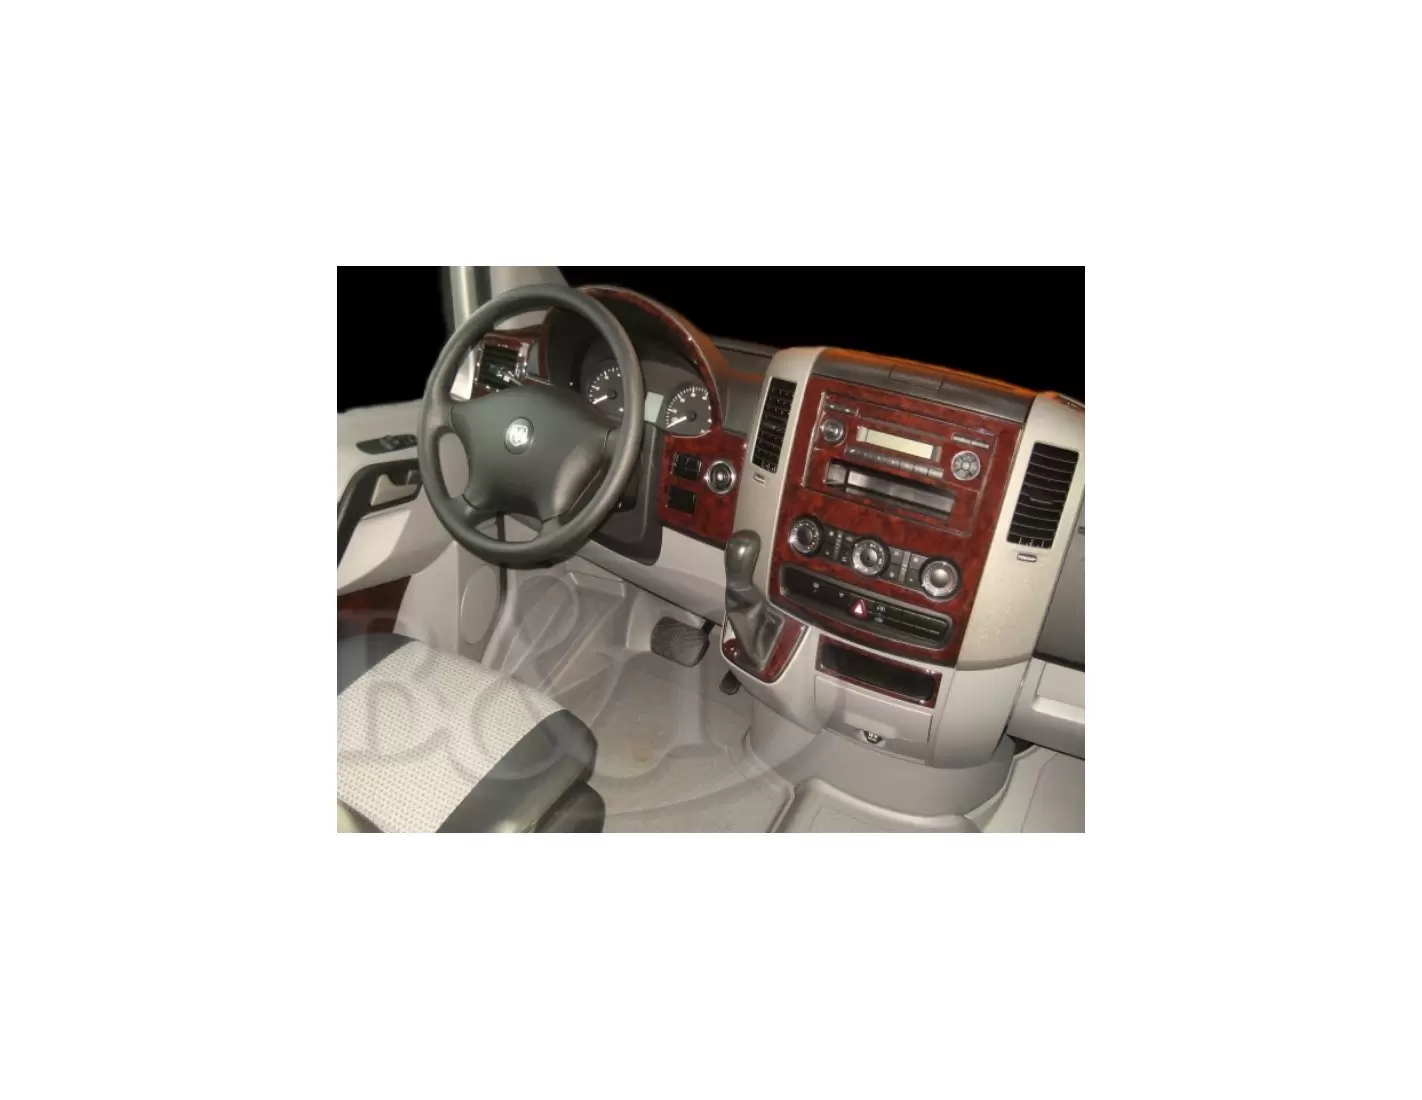 Mercedes Sprinter 2007-2010 Voll Satz BD innenausstattung armaturendekor cockpit dekor - 1- Cockpit Dekor Innenraum